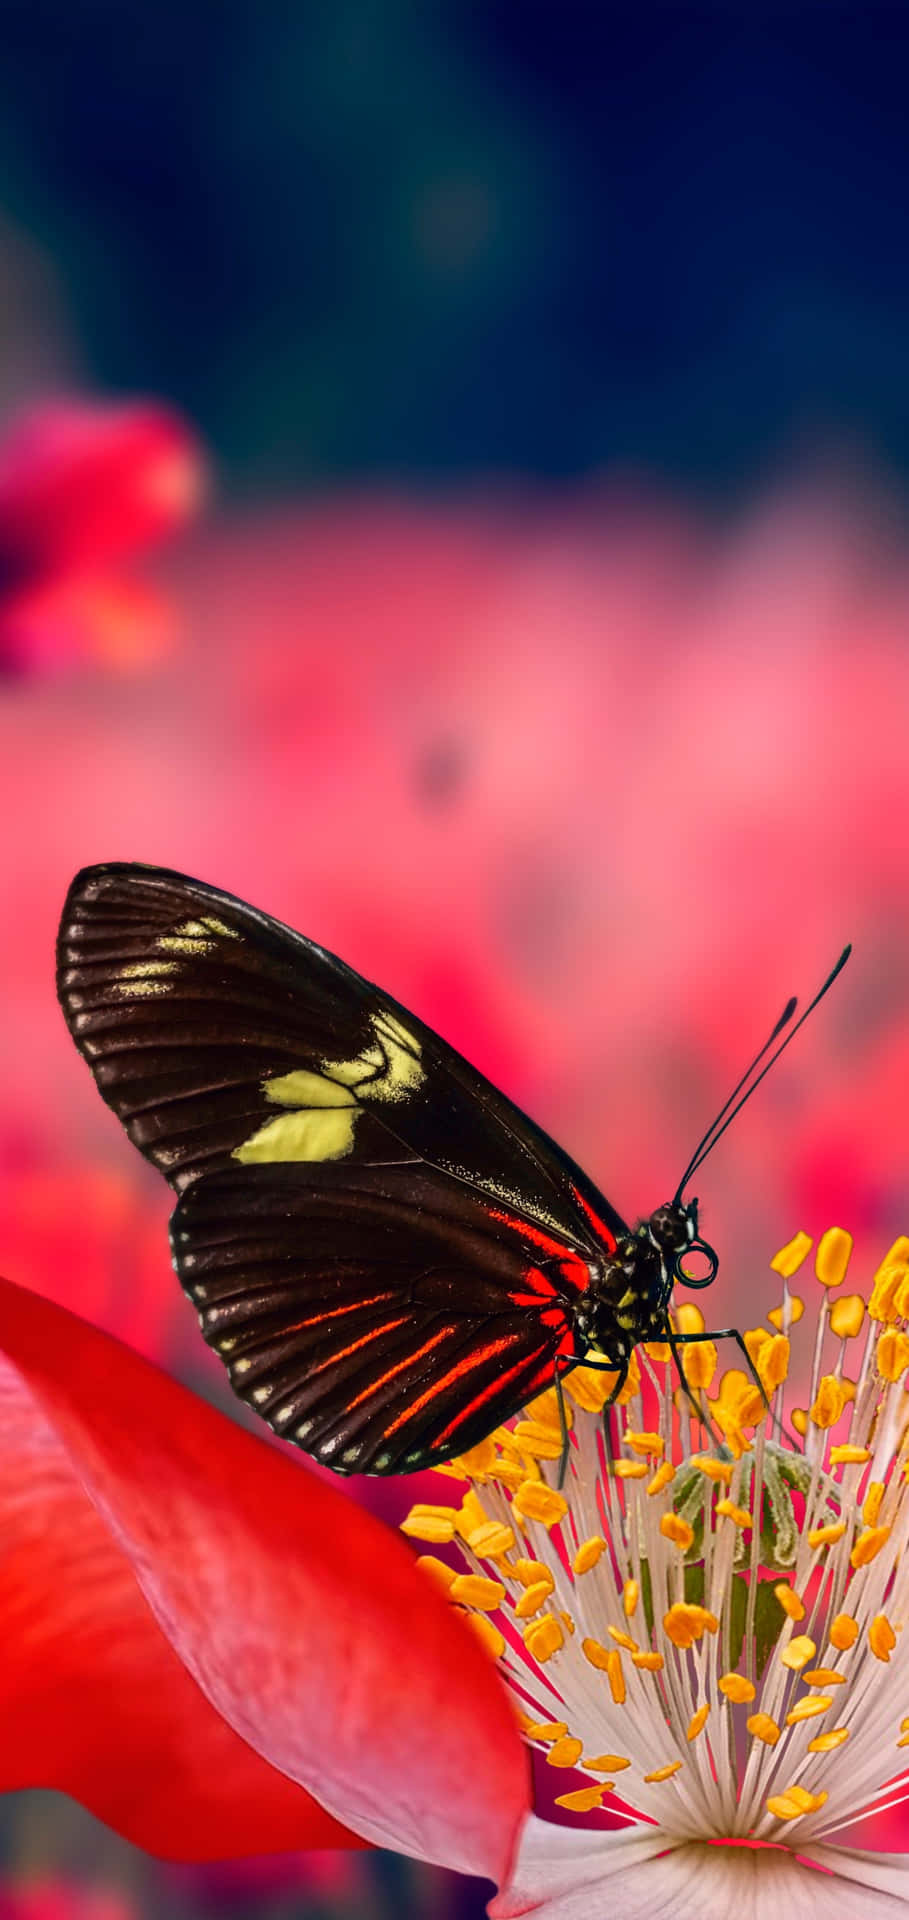 Einroter Schmetterling Hebt Ab. Wallpaper